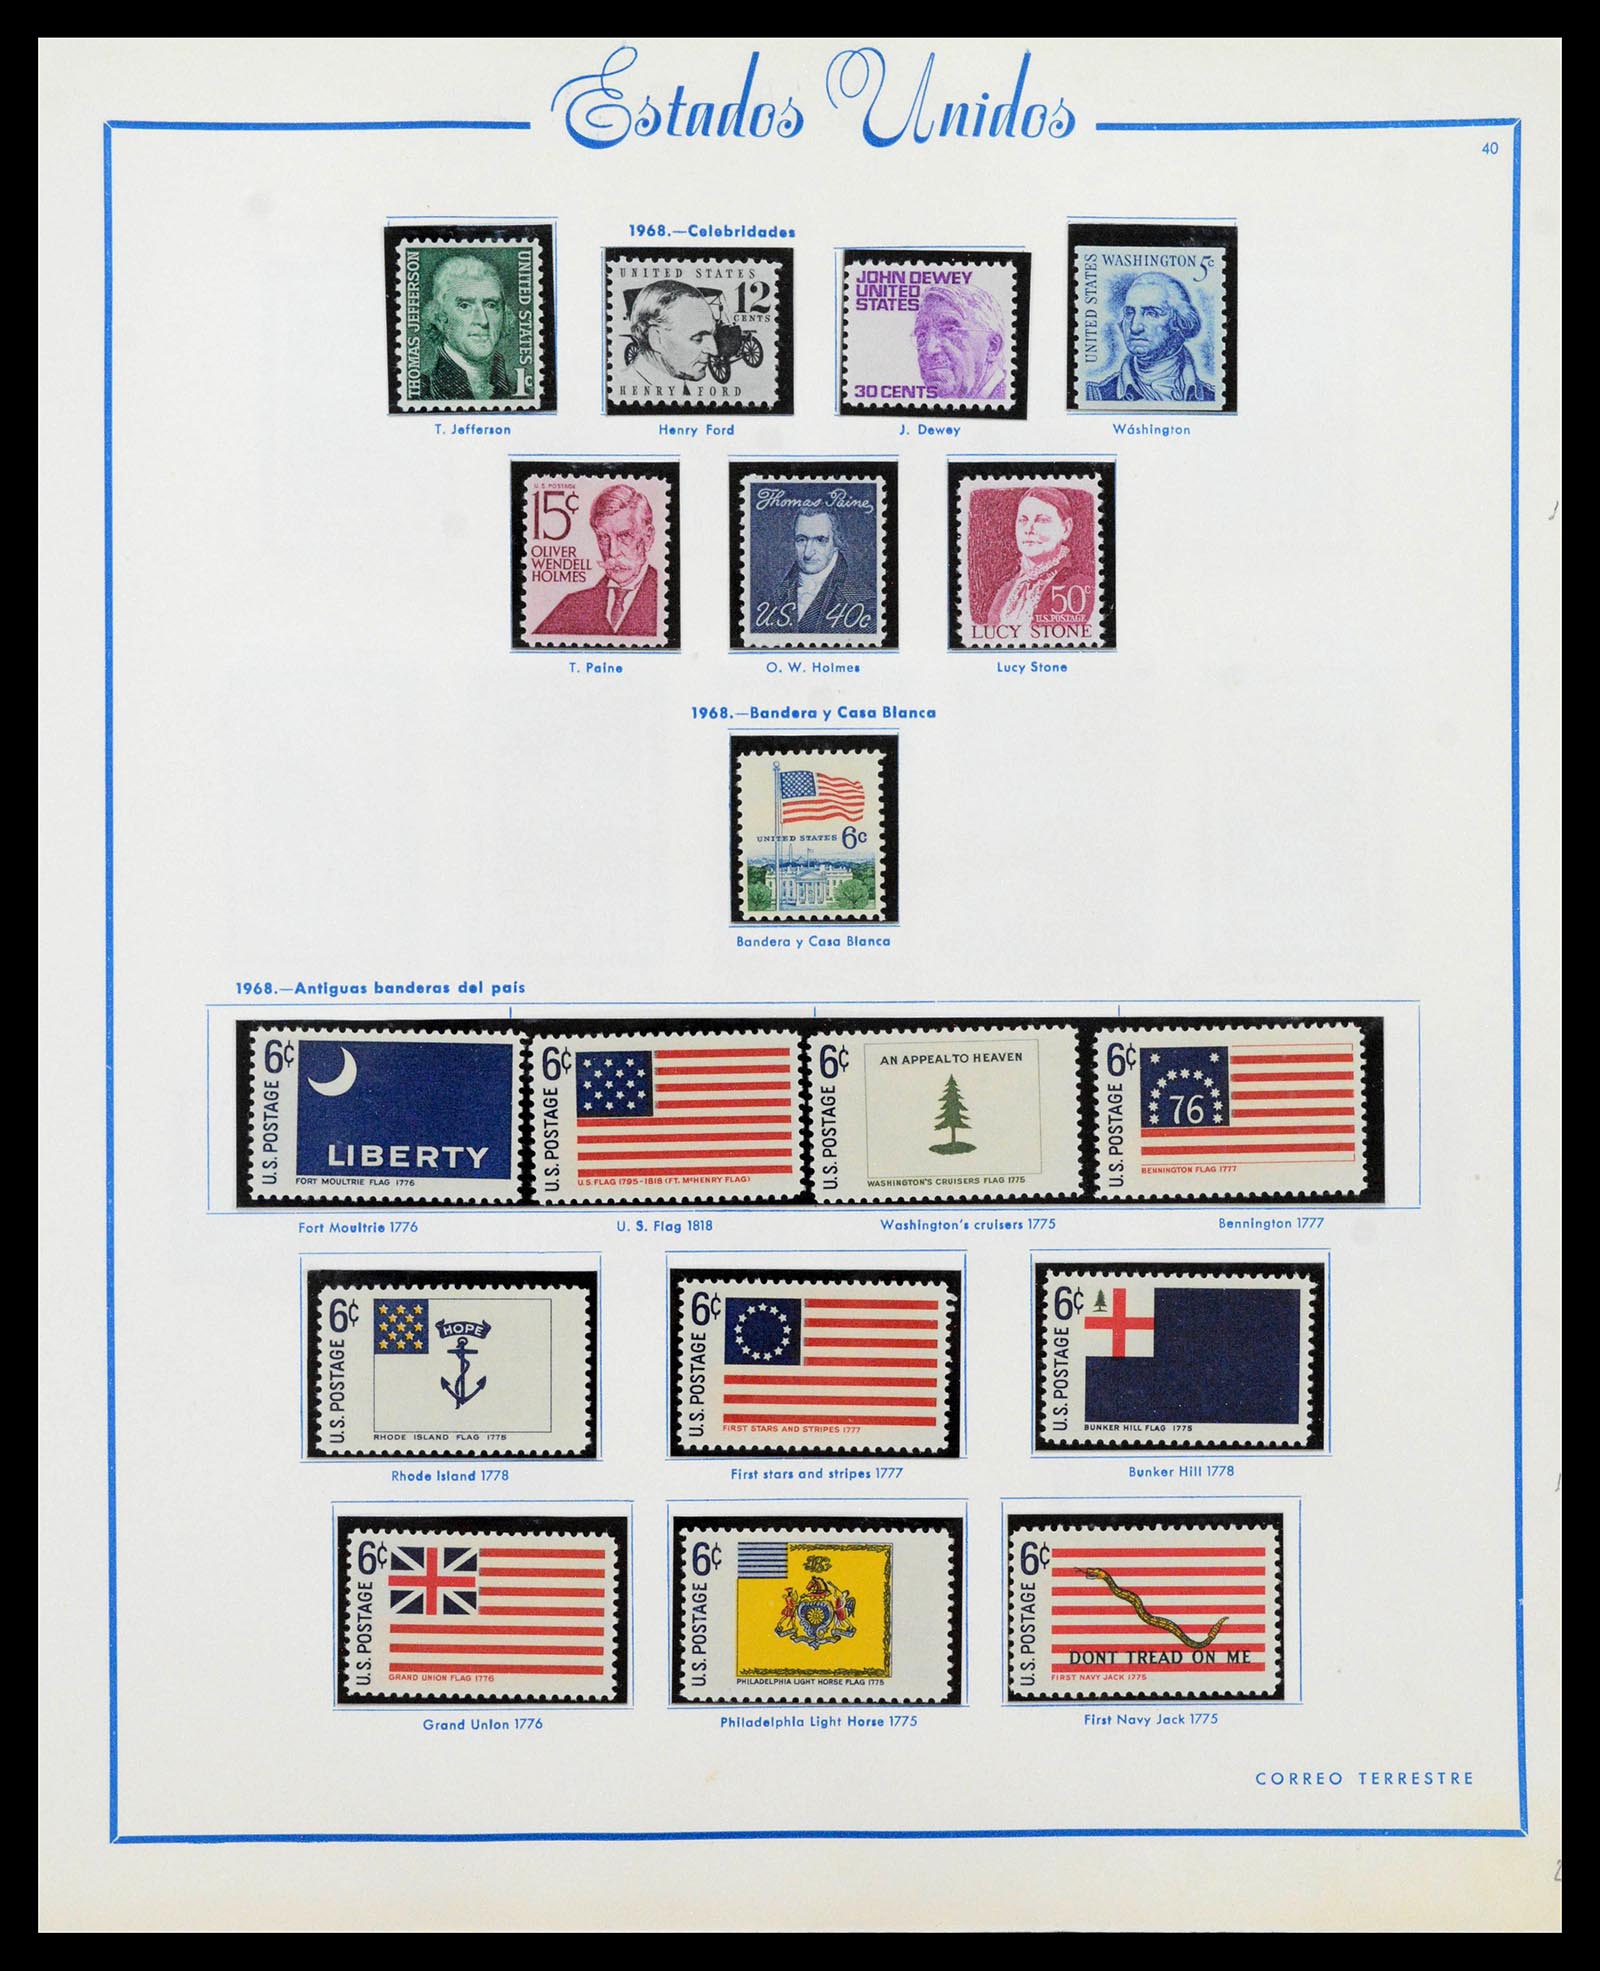 39190 0045 - Stamp collection 39190 USA 1851-1975.